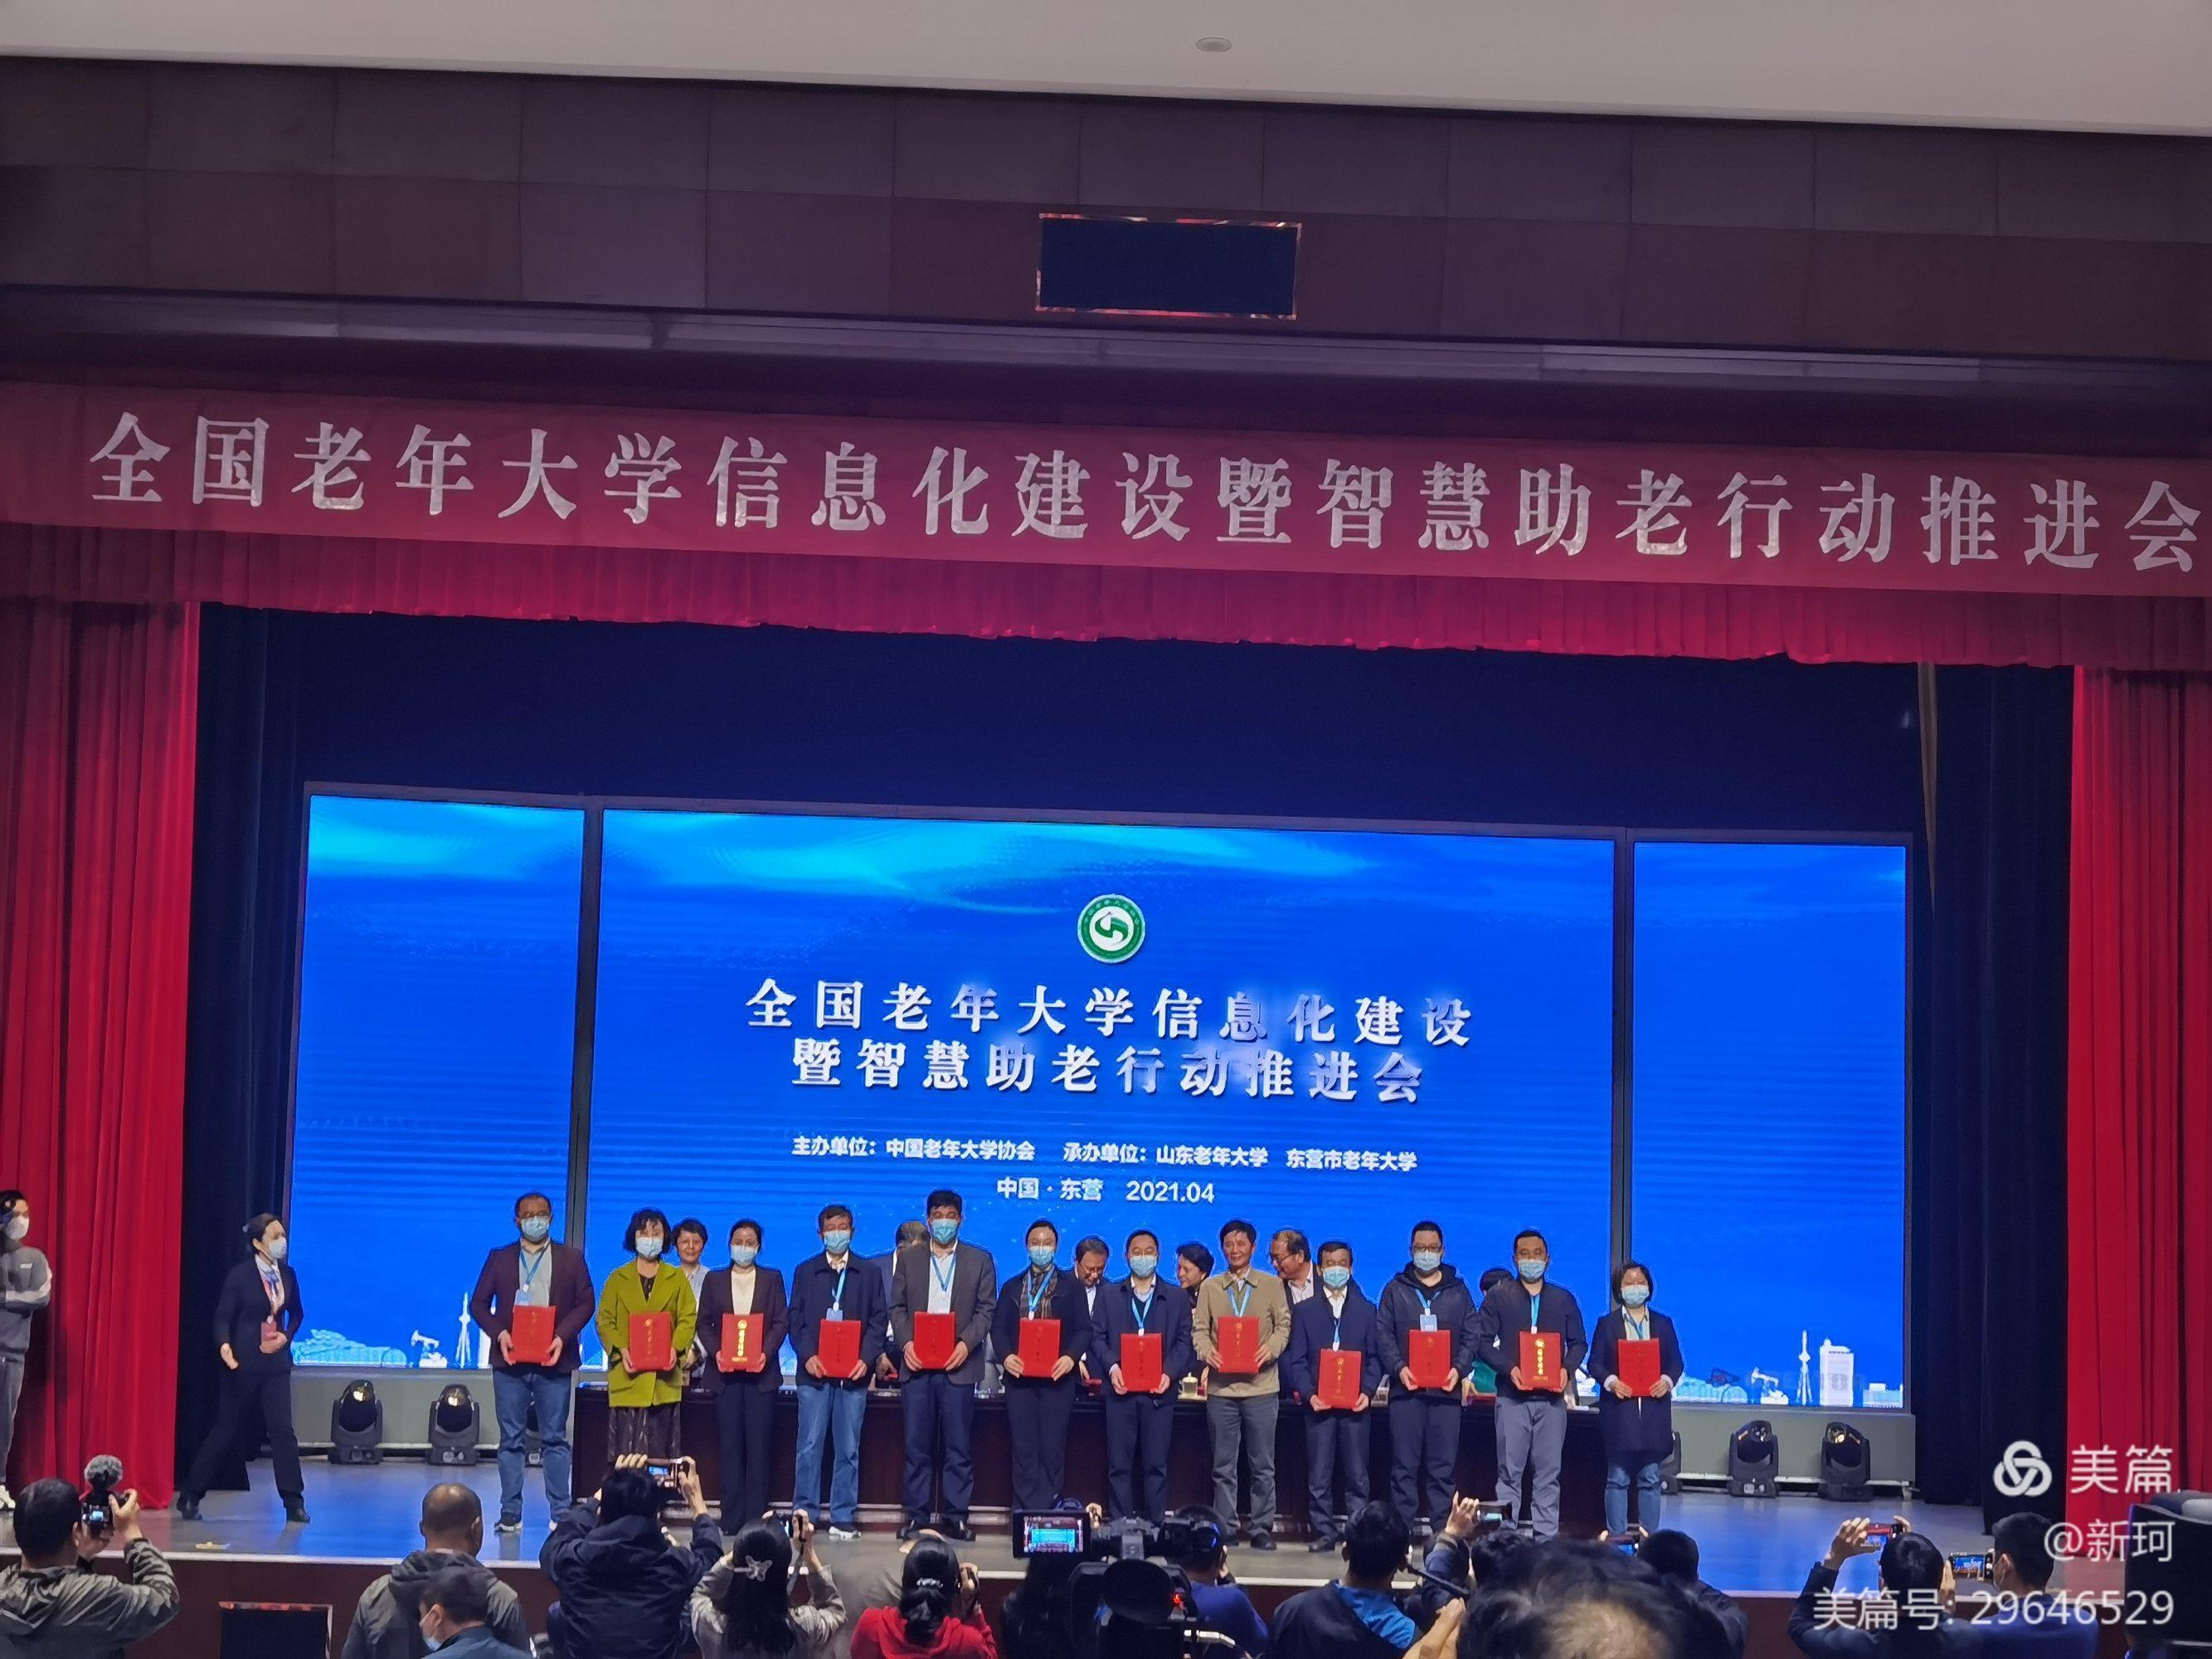 渭南市老年大学荣获“全国老年大学信息化建设优秀单位”